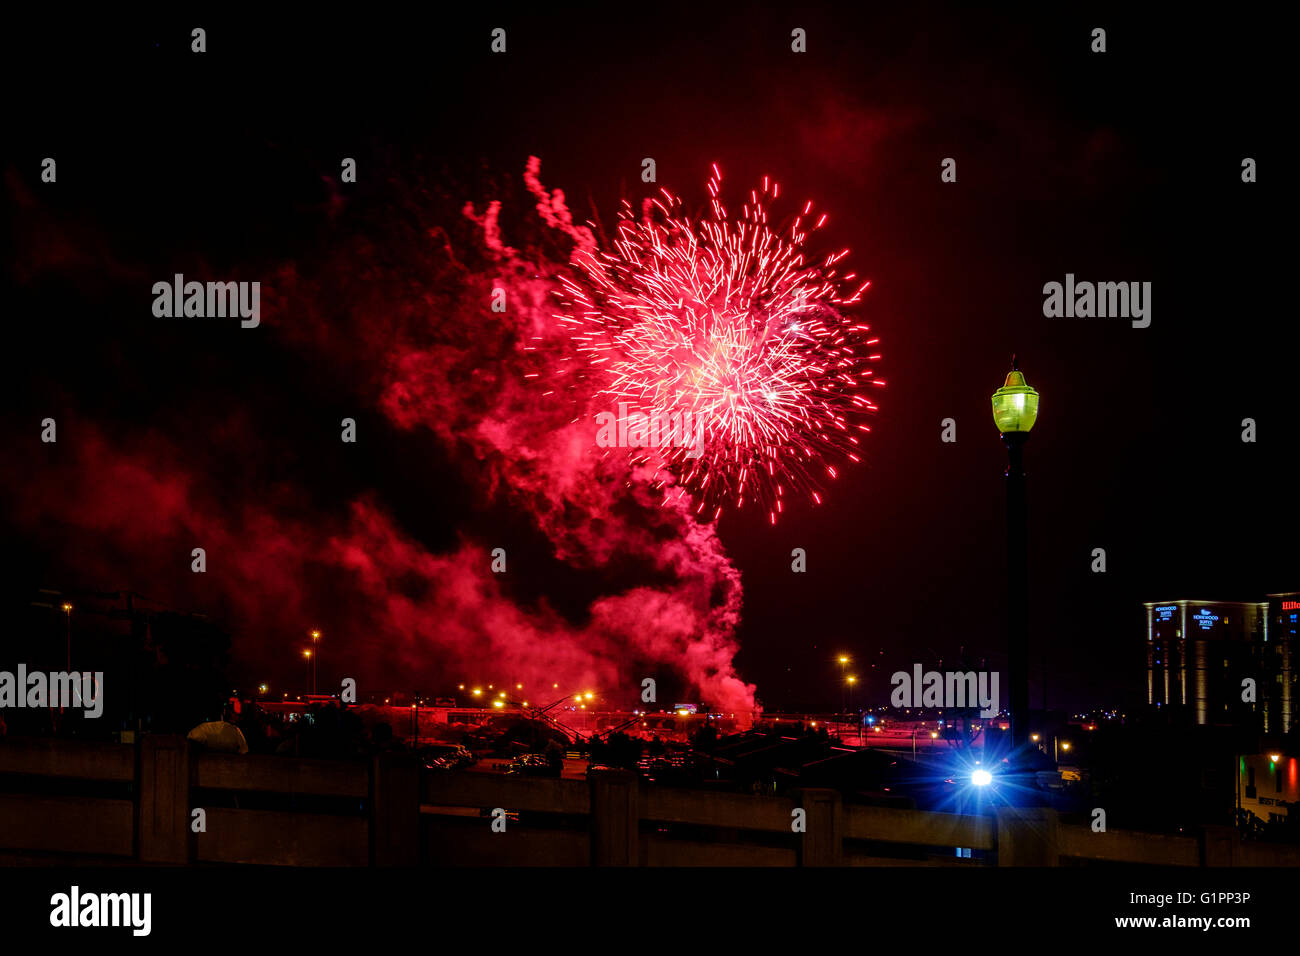 La célébration du Jour de l'indépendance américaine avec plus d'artifice explosion Bricktown Ballpark au centre-ville d'Oklahoma City, Oklahoma, USA. Banque D'Images